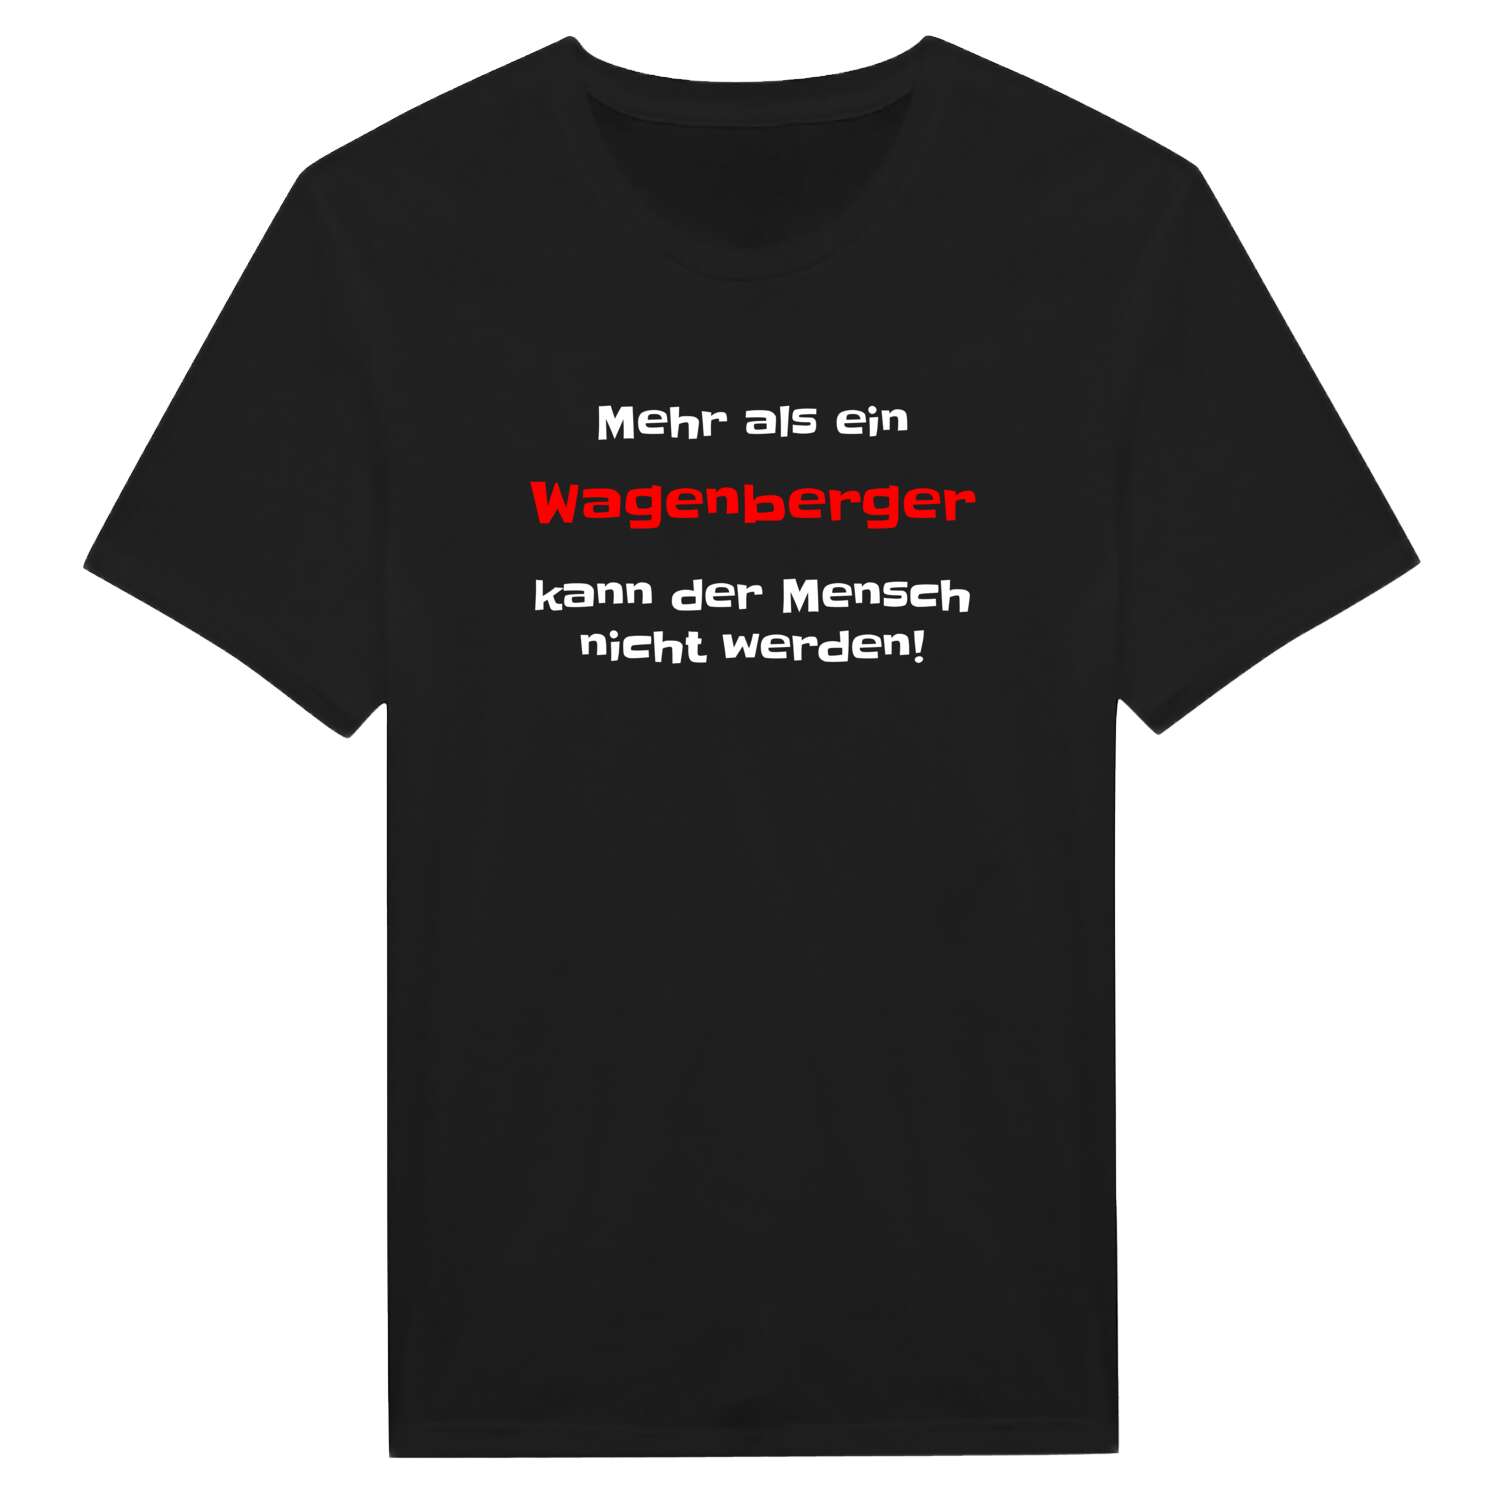 Wagenberg T-Shirt »Mehr als ein«